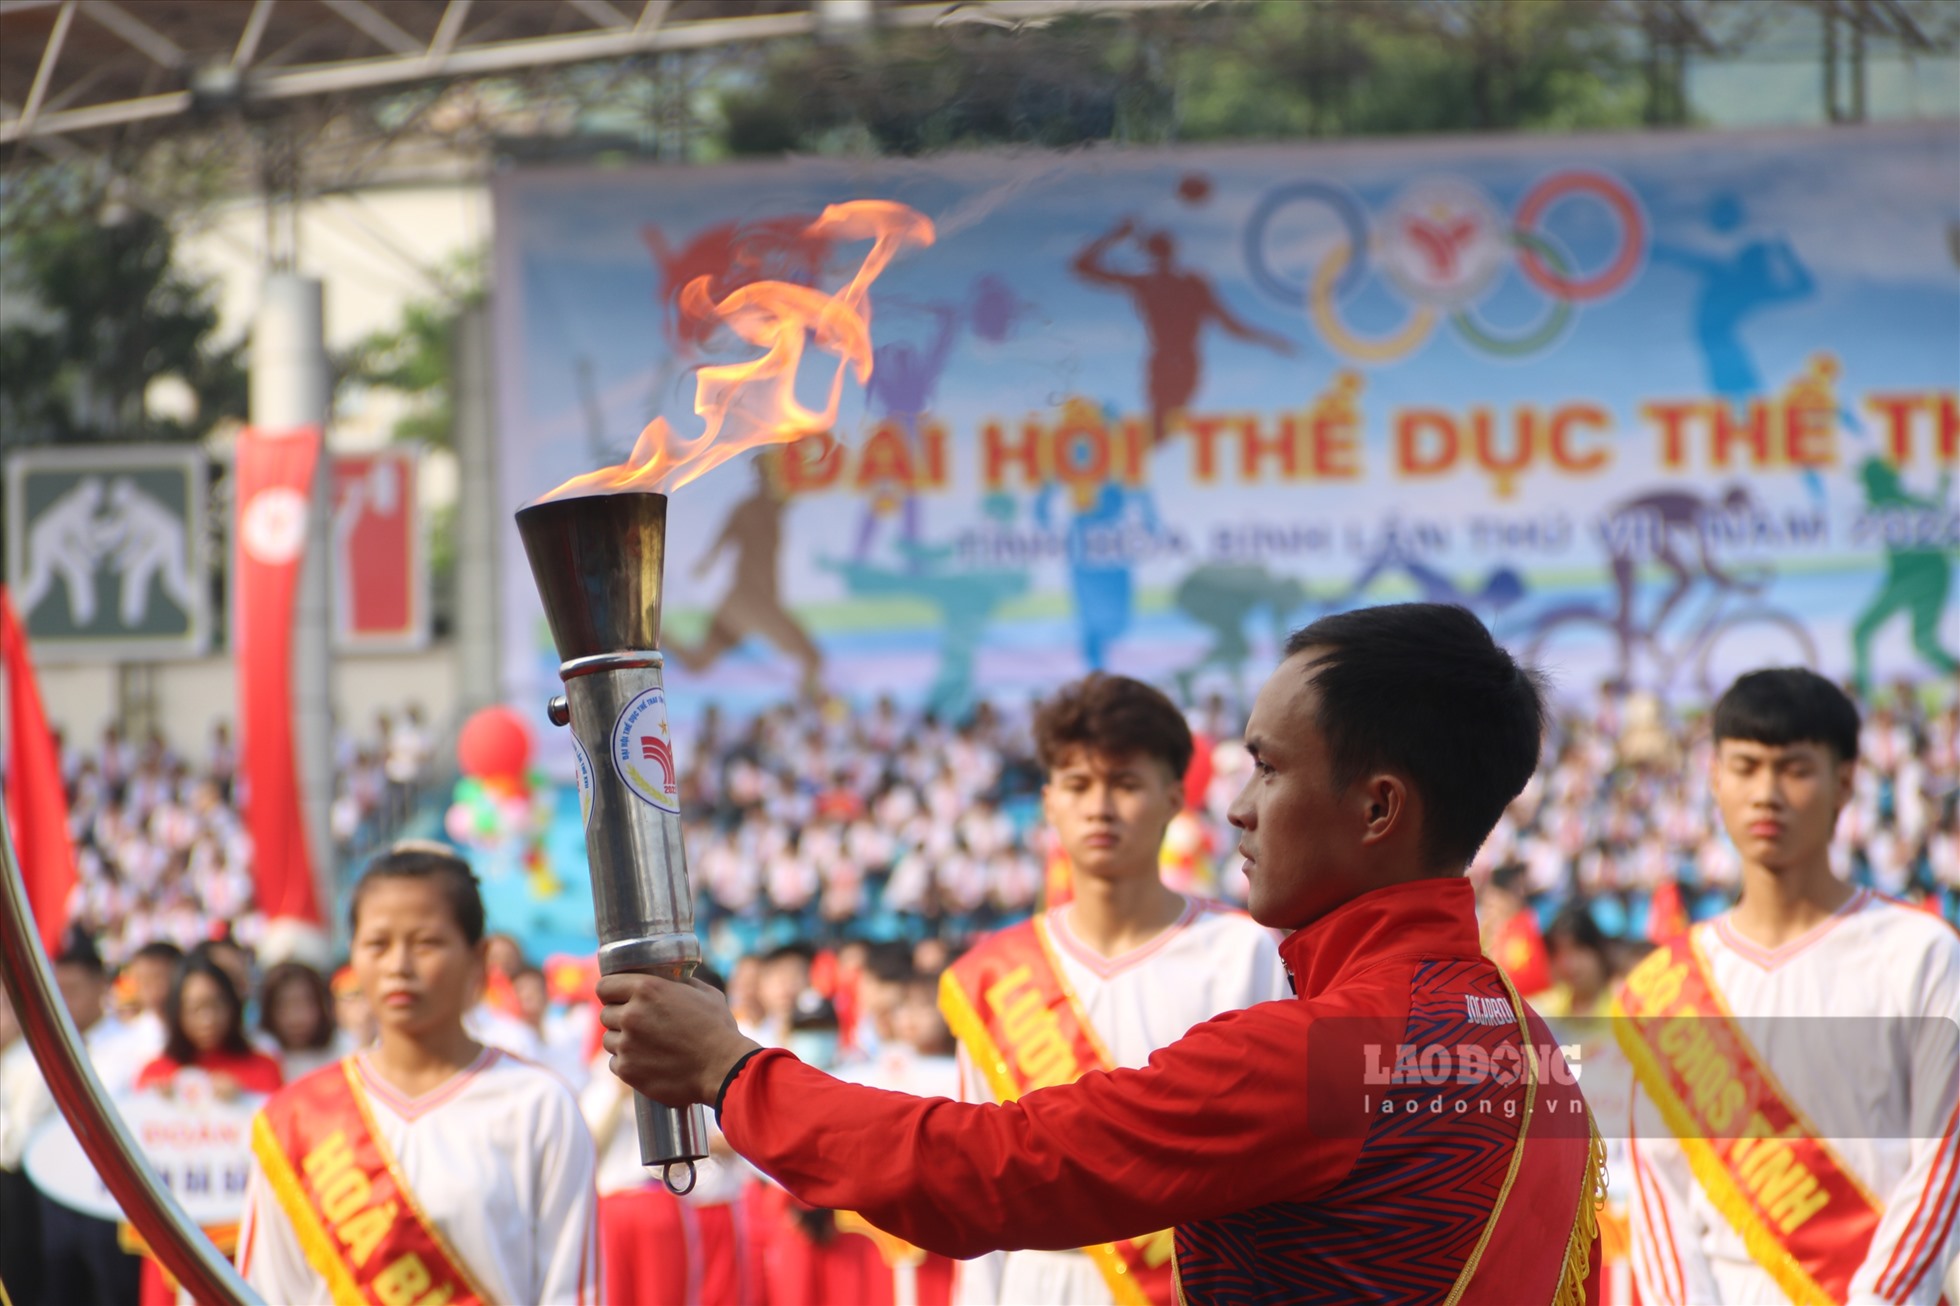 Ngọn đuốc trên tay của vận động viên Đinh Văn Linh -  là vận động viên kiện tướng cấp Quốc gia, là thành viên đội tuyển Xe đạp Việt Nam. Vận động viên tiêu biểu của tỉnh đã đạt được nhiều huy chương Vàng tại Giải vô địch Xe đạp toàn quốc và đạt huy chương Bạc tại Đại hội Thể thao Đông Nam Á lần thứ 31.